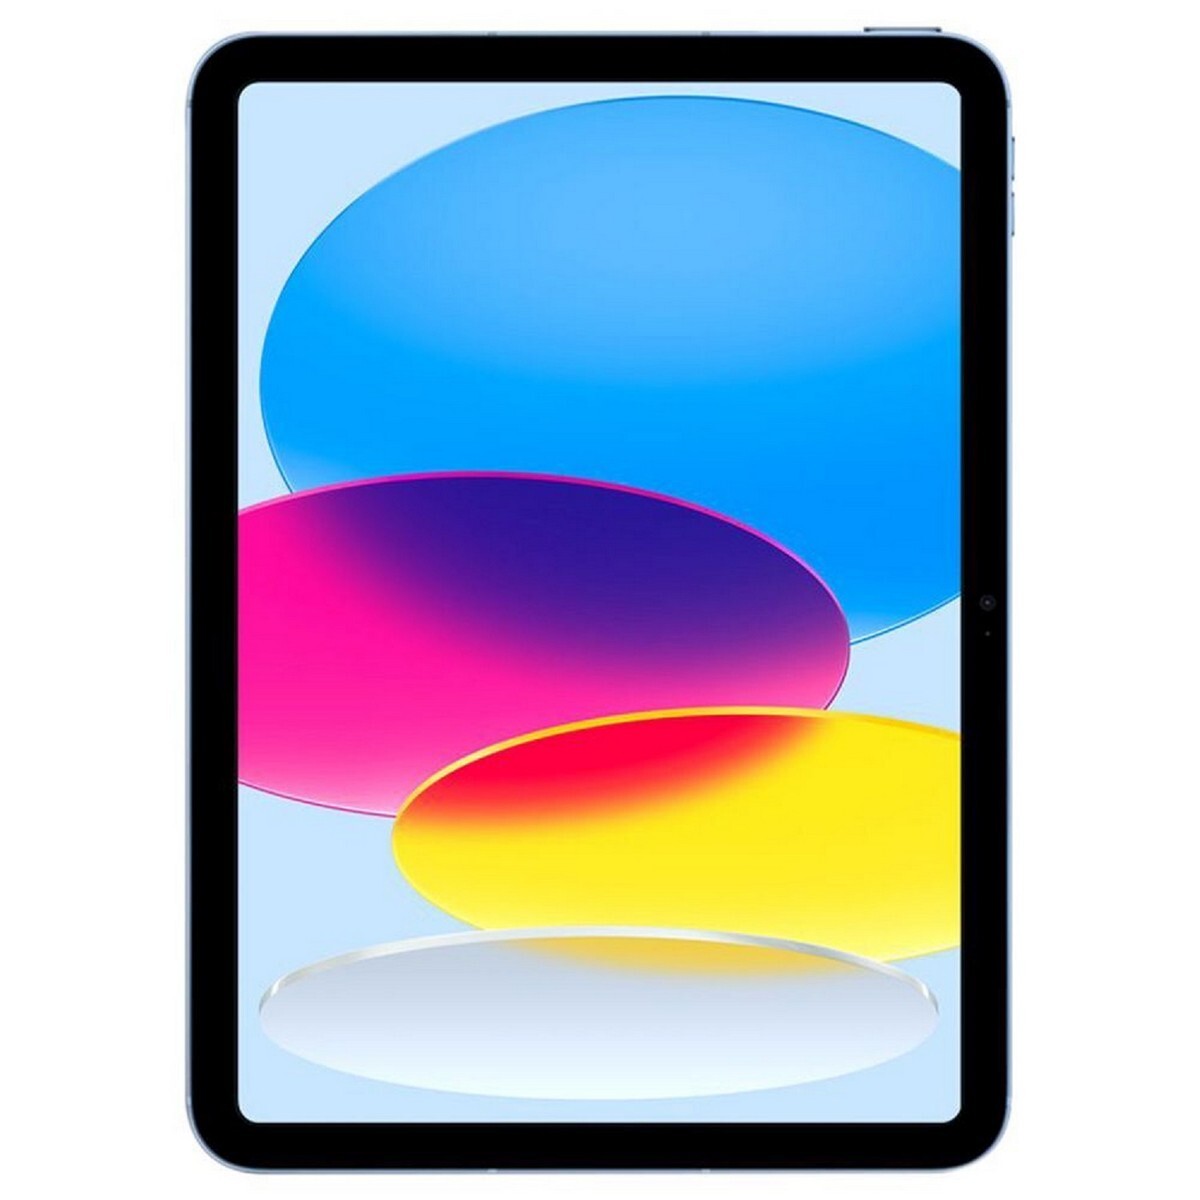 Apple iPad Wifi Tablet 64GB MPQ13 10.9 Inches Blue